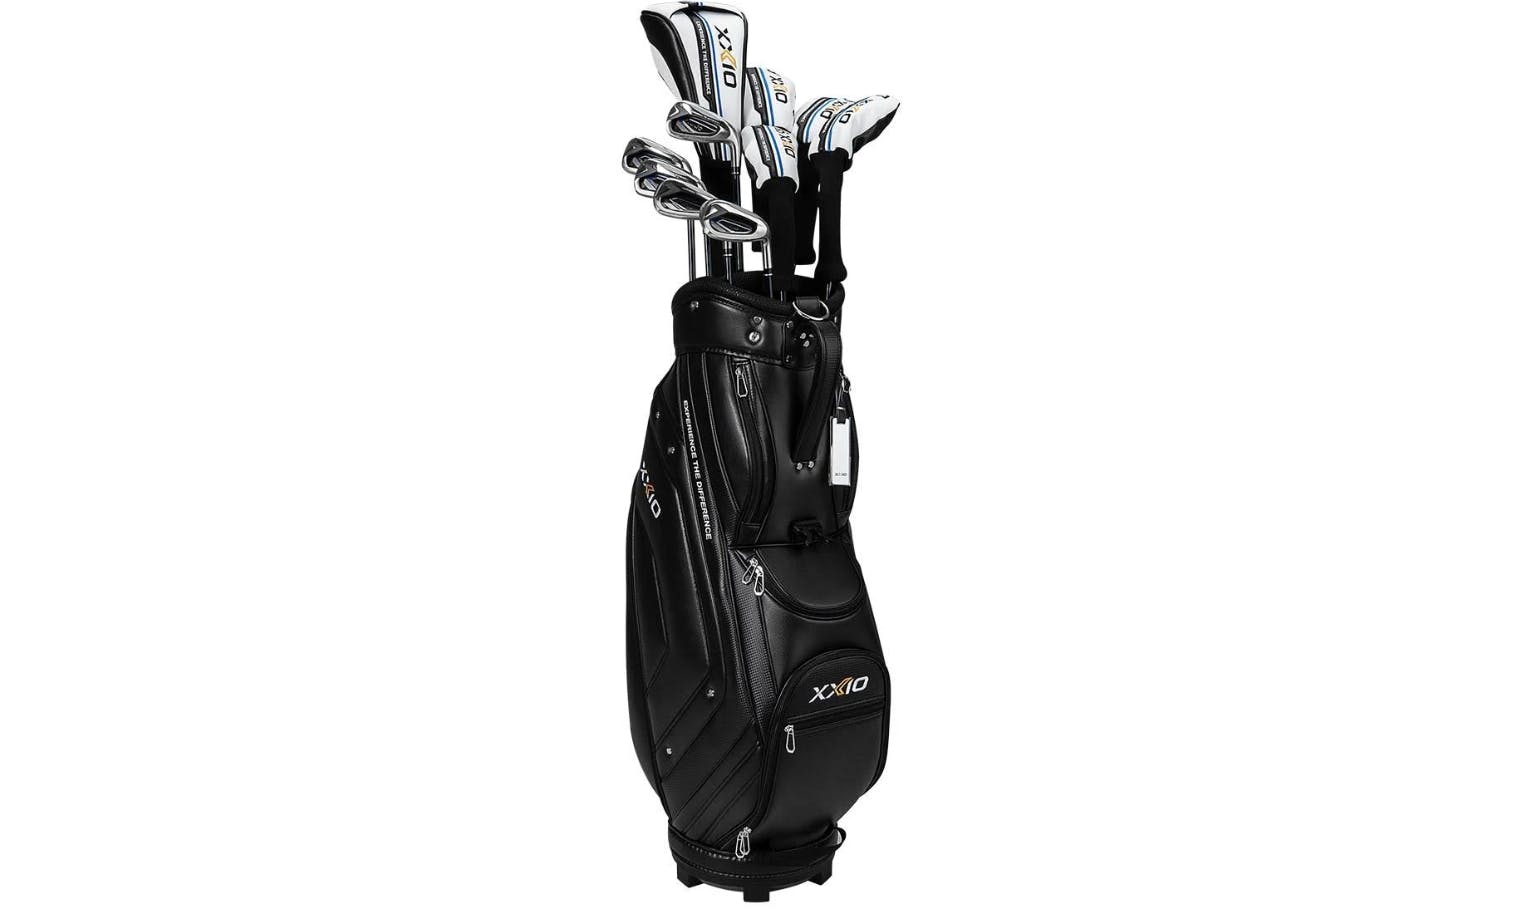 Premium Golf Gift Set for Men & Women - Golfers Gift Basket DELUXE – The  Golfing Eagles